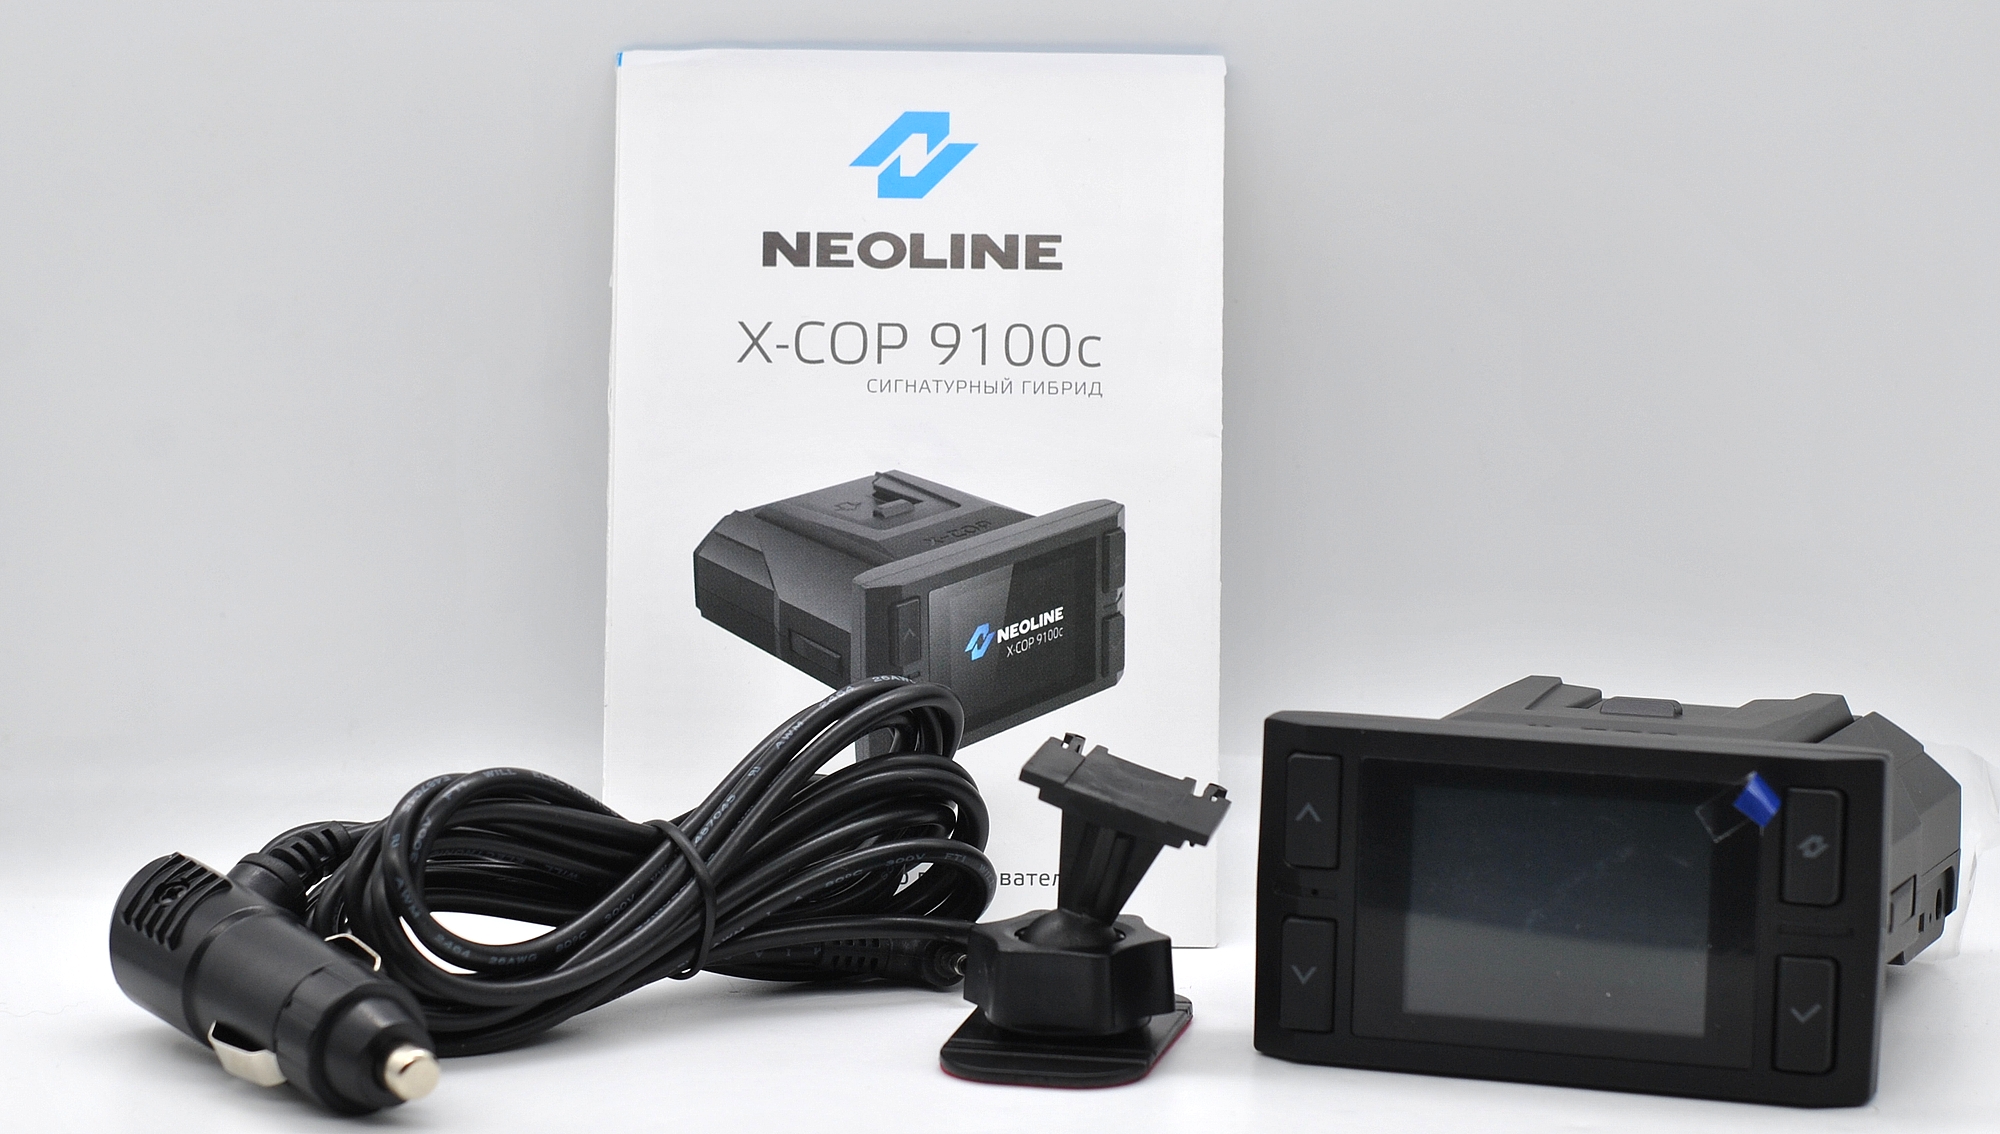 Neoline x cop 9100c